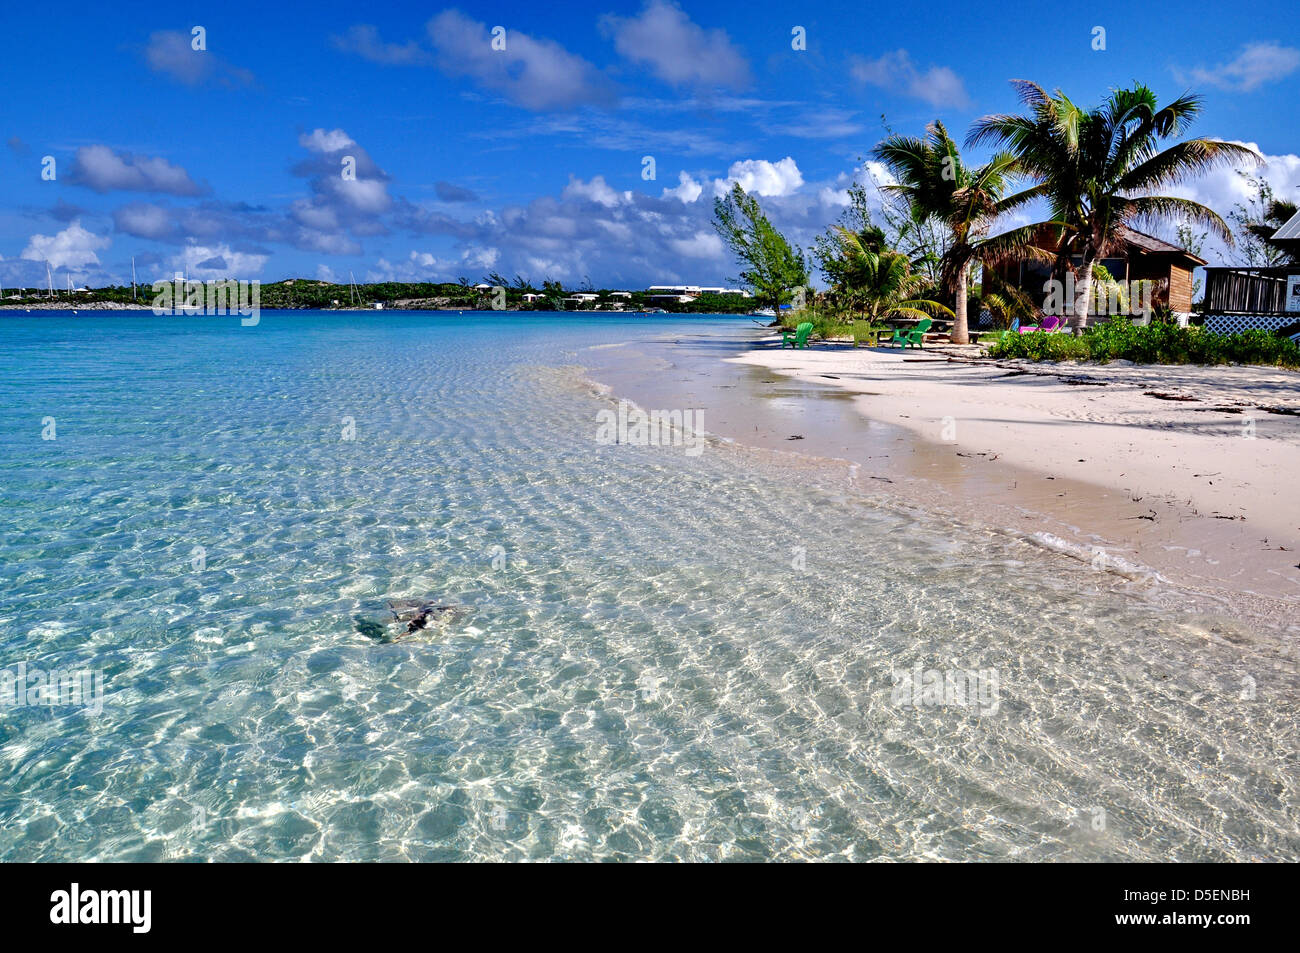 Caraïbes, Bahamas, plage, ciel, tropical, tropiques, plages, Blanc, sable, mer, océan, surf, nuages, ciel nuageux, turquoise,paradis Banque D'Images